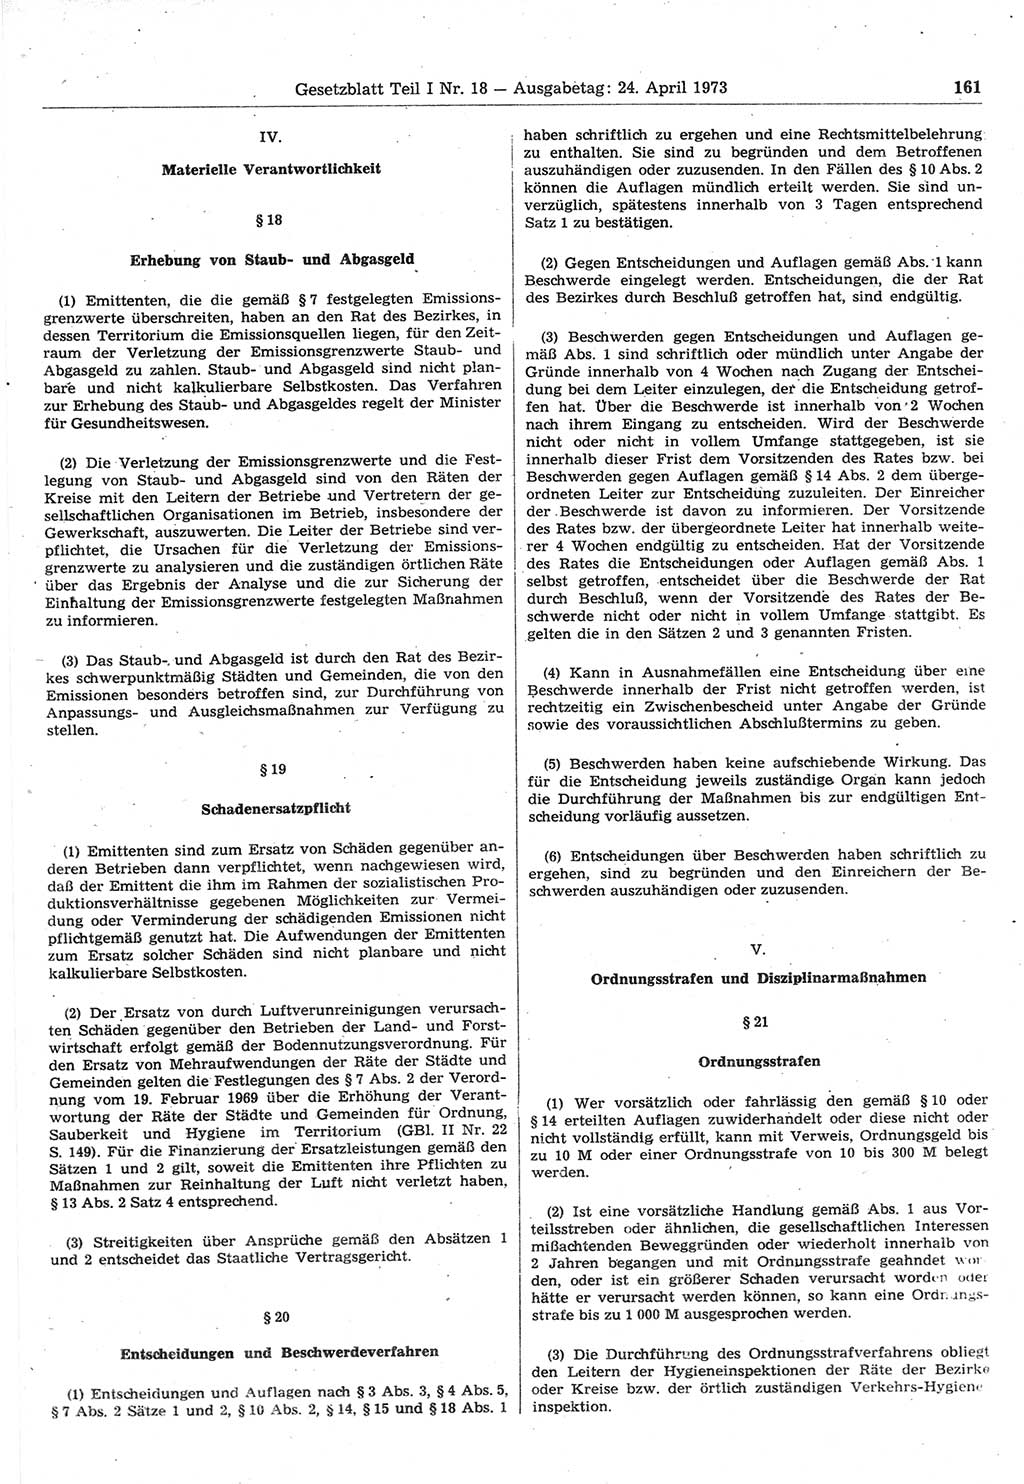 Gesetzblatt (GBl.) der Deutschen Demokratischen Republik (DDR) Teil Ⅰ 1973, Seite 161 (GBl. DDR Ⅰ 1973, S. 161)